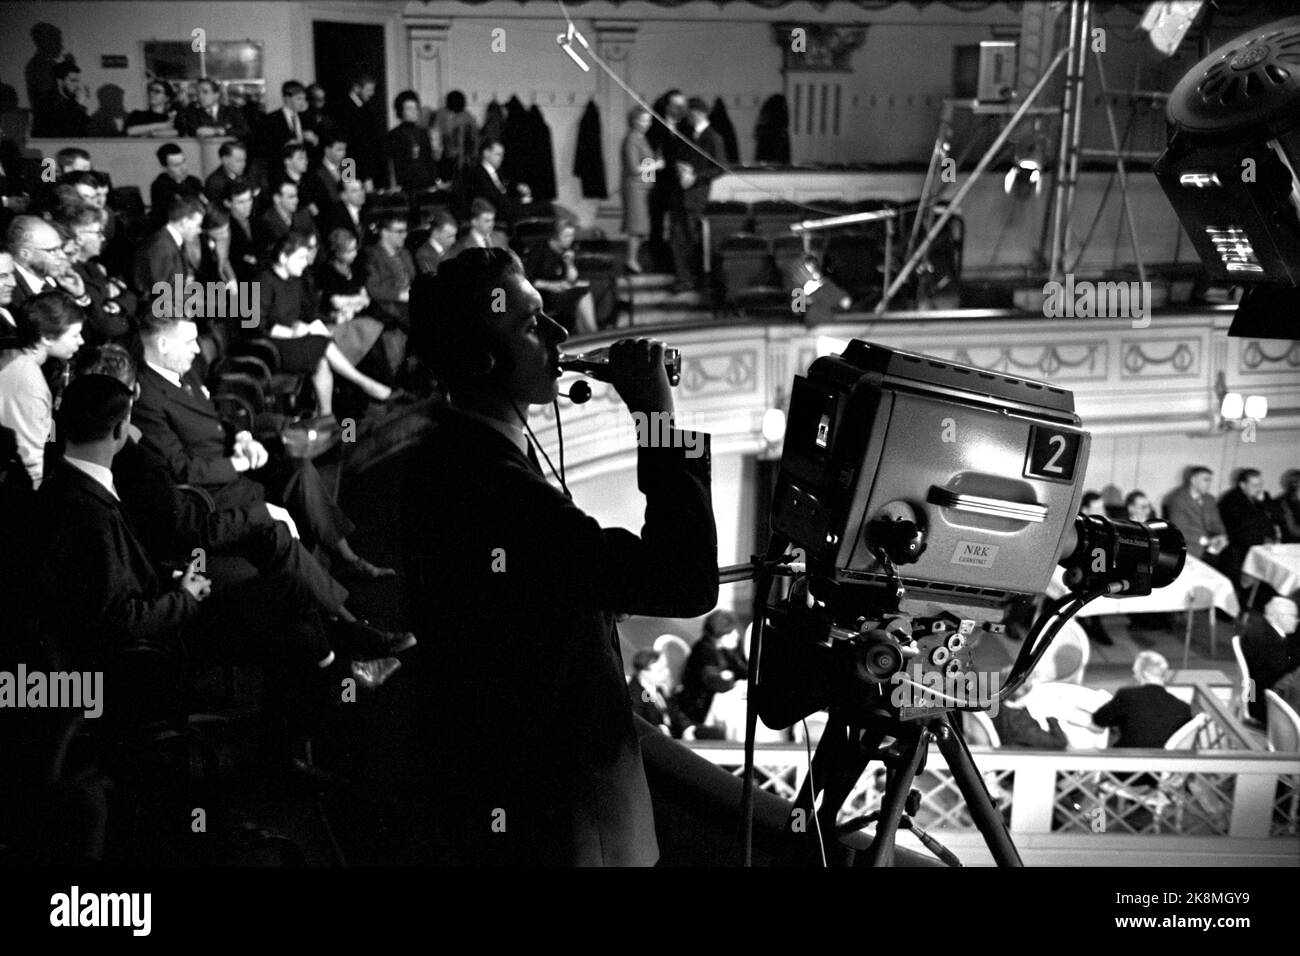 Oslo gennaio 1964 - dibattito politico televisivo al Teatro Centrale di Oslo. "Dove si trova il comunismo?" Mostra l'intero team televisivo in azione. Direttore del programma Kjell Arljot Wig. Il dibattito si svolge tra il panel e la sala. sono installate 4 telecamere e 10 microfoni. Il cameraman era assetato e prende un sorso della bottiglia. Foto: Aage Storløkken / corrente / NTB Foto Stock